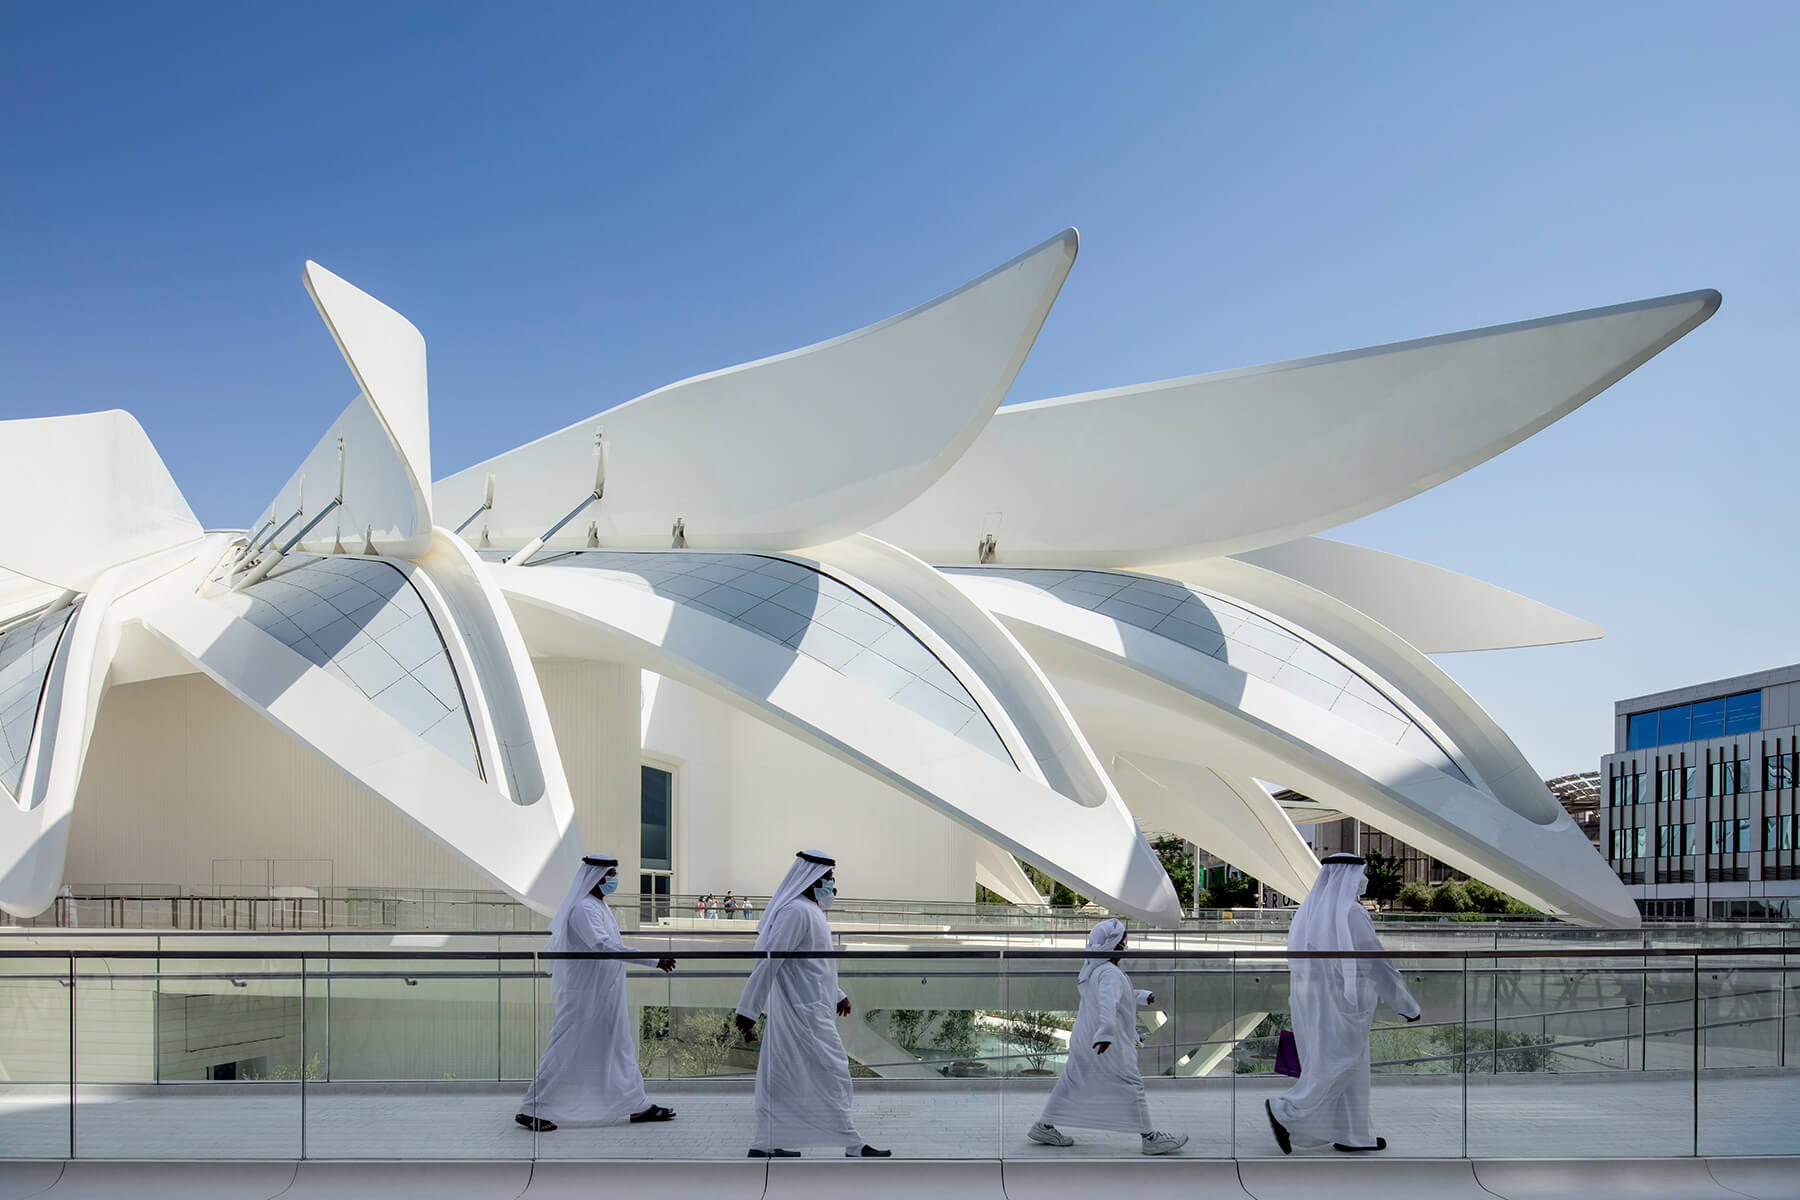 Architecture Photography in Dubai 